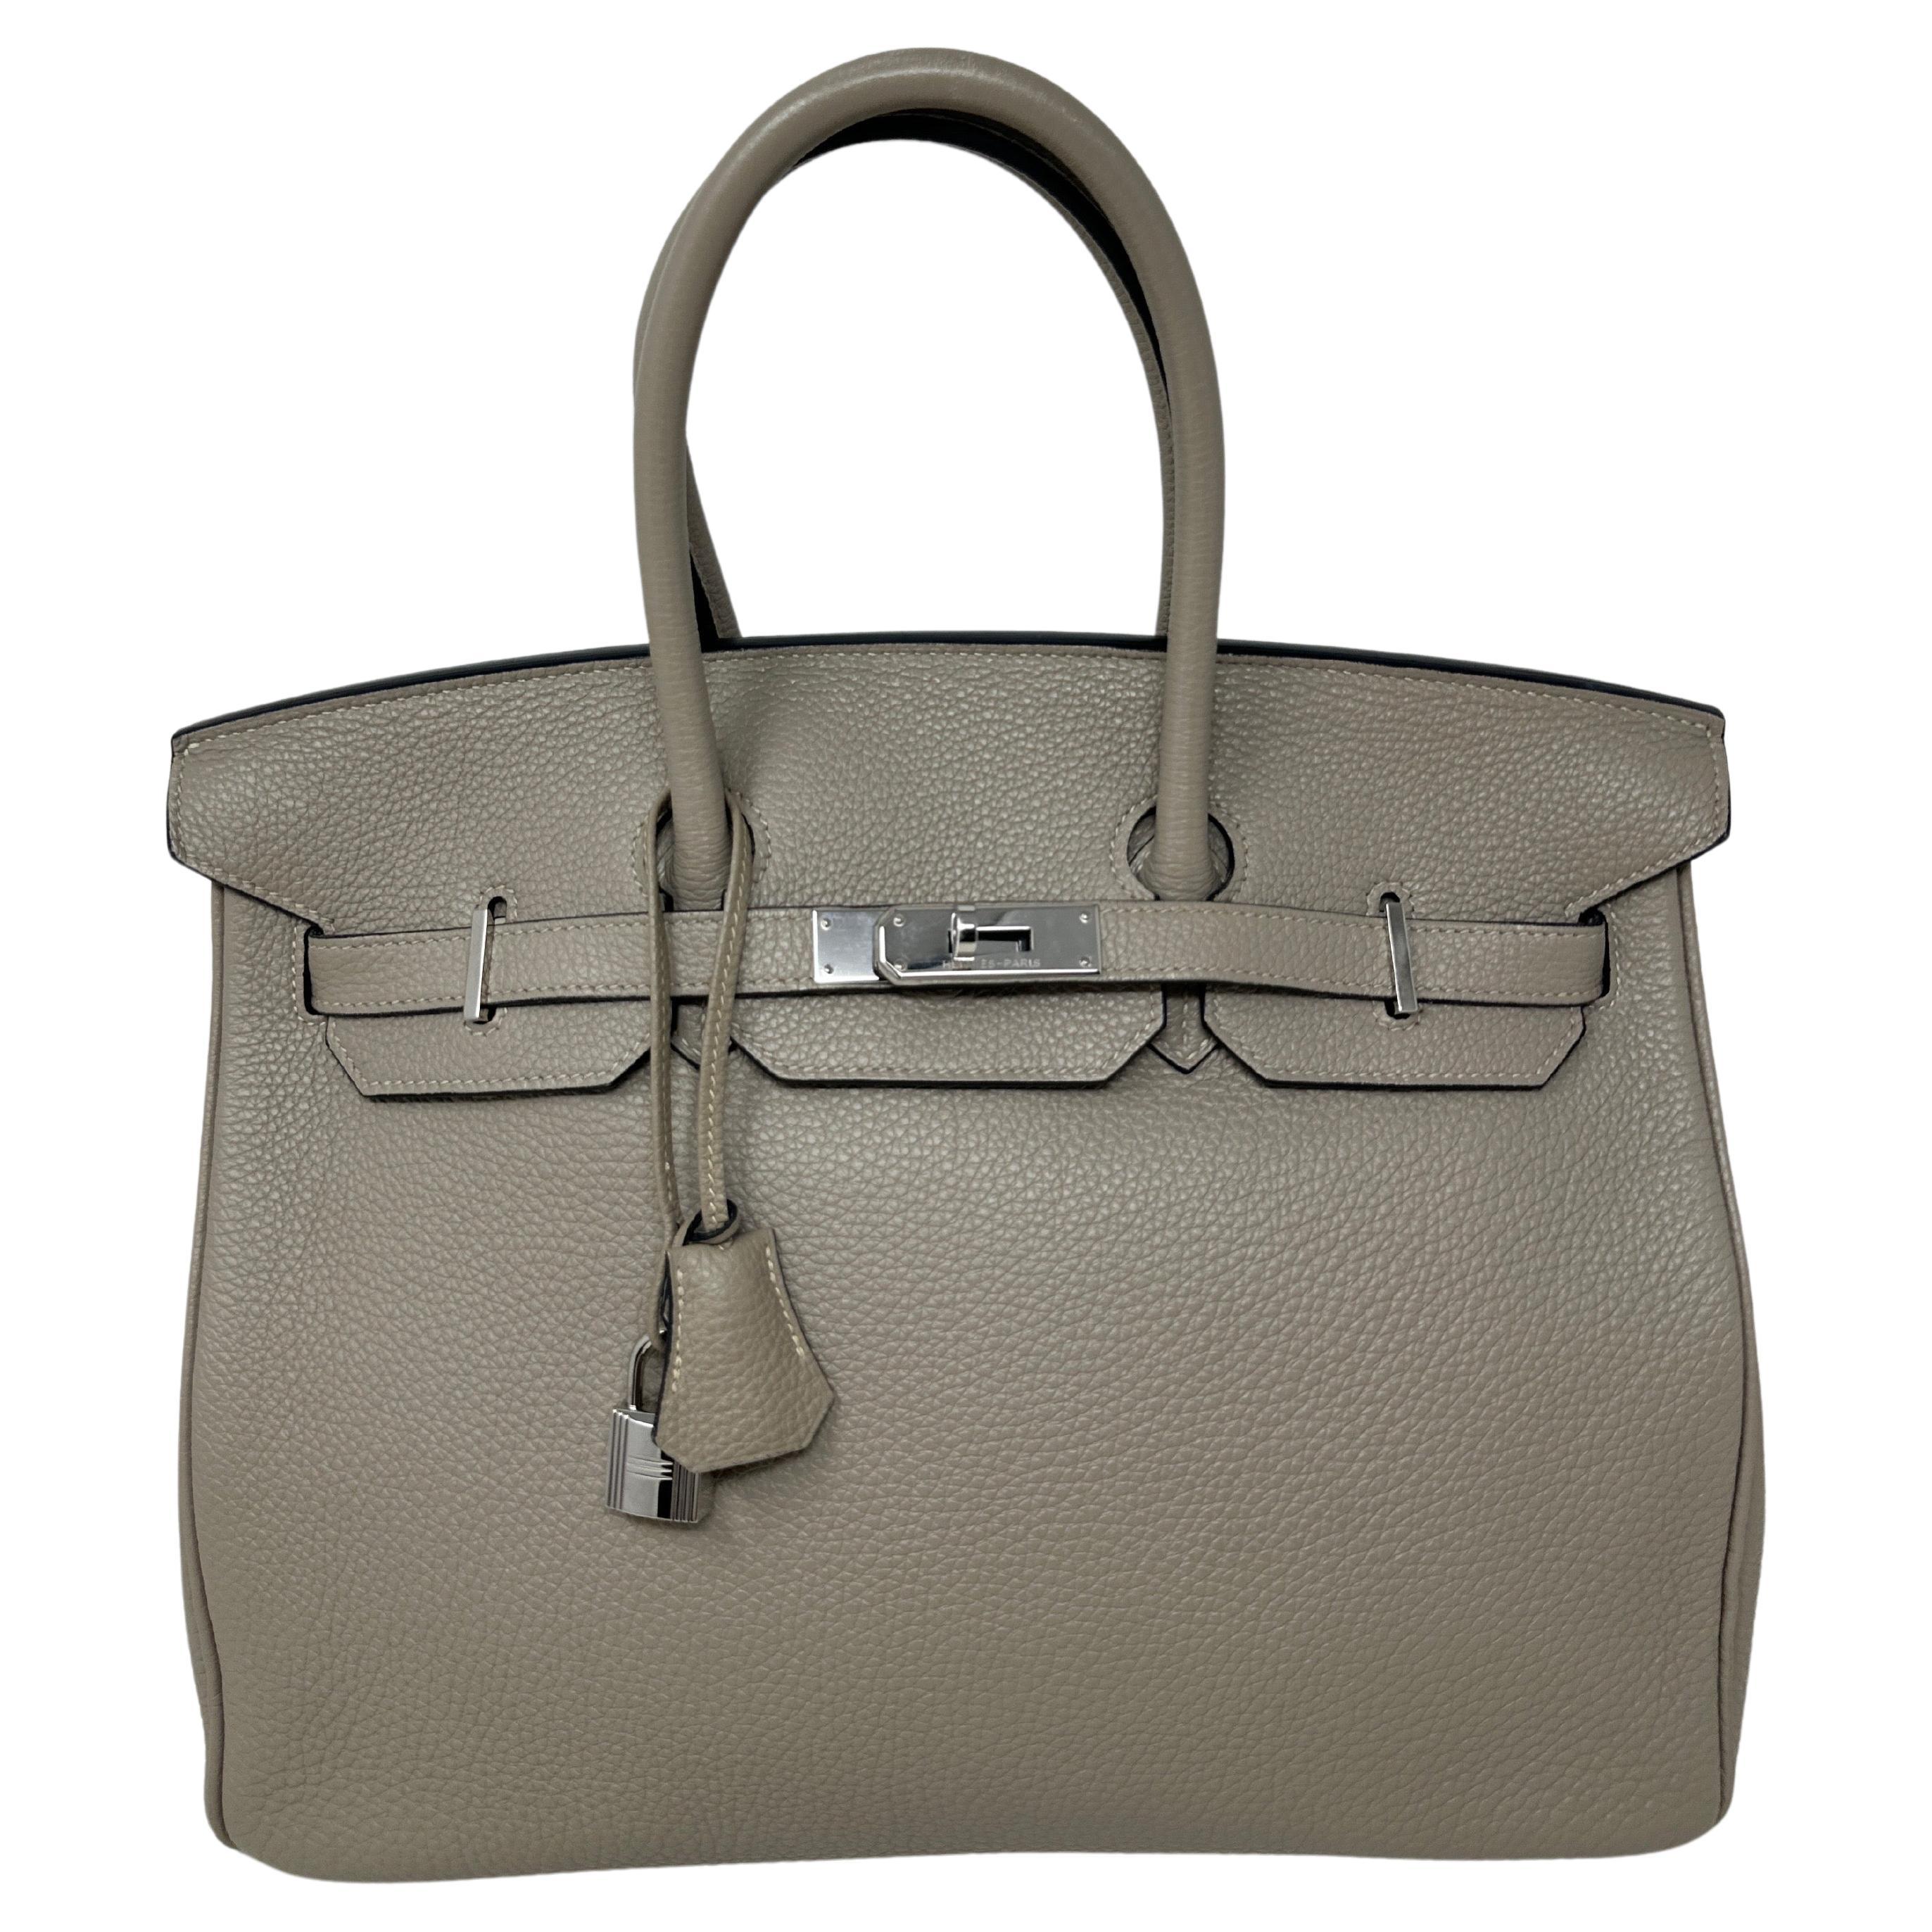 Hermes Birkin Bag